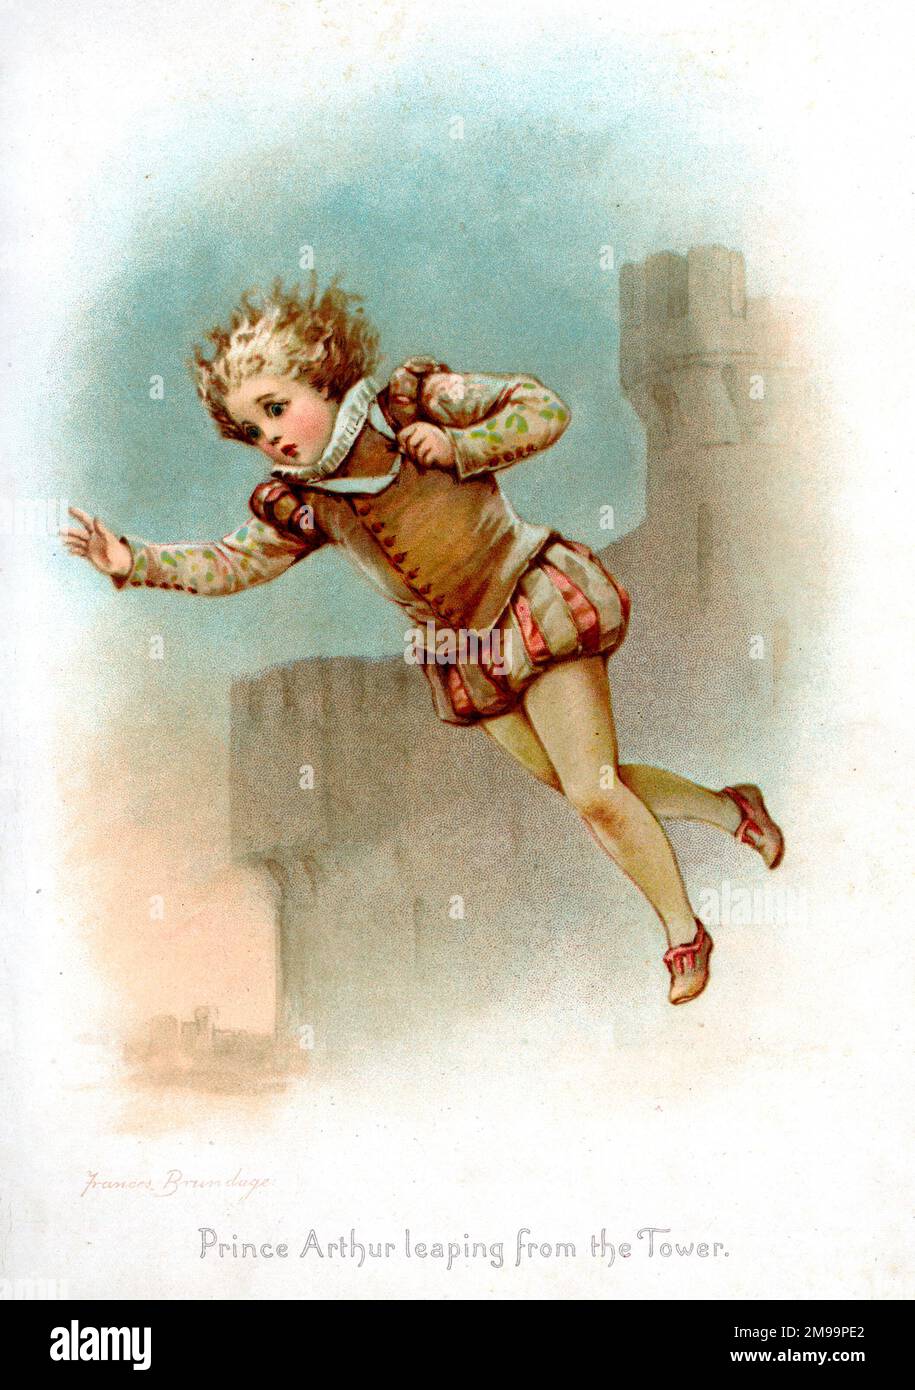 Il principe Arthur salpando dalla torre. Il principe Arthur, duca di Bretagna, fu imprigionato e poi scomparso - la storia della sua caduta da una torre probabilmente ha origine nel gioco di Shakespeare, re Giovanni. Foto Stock